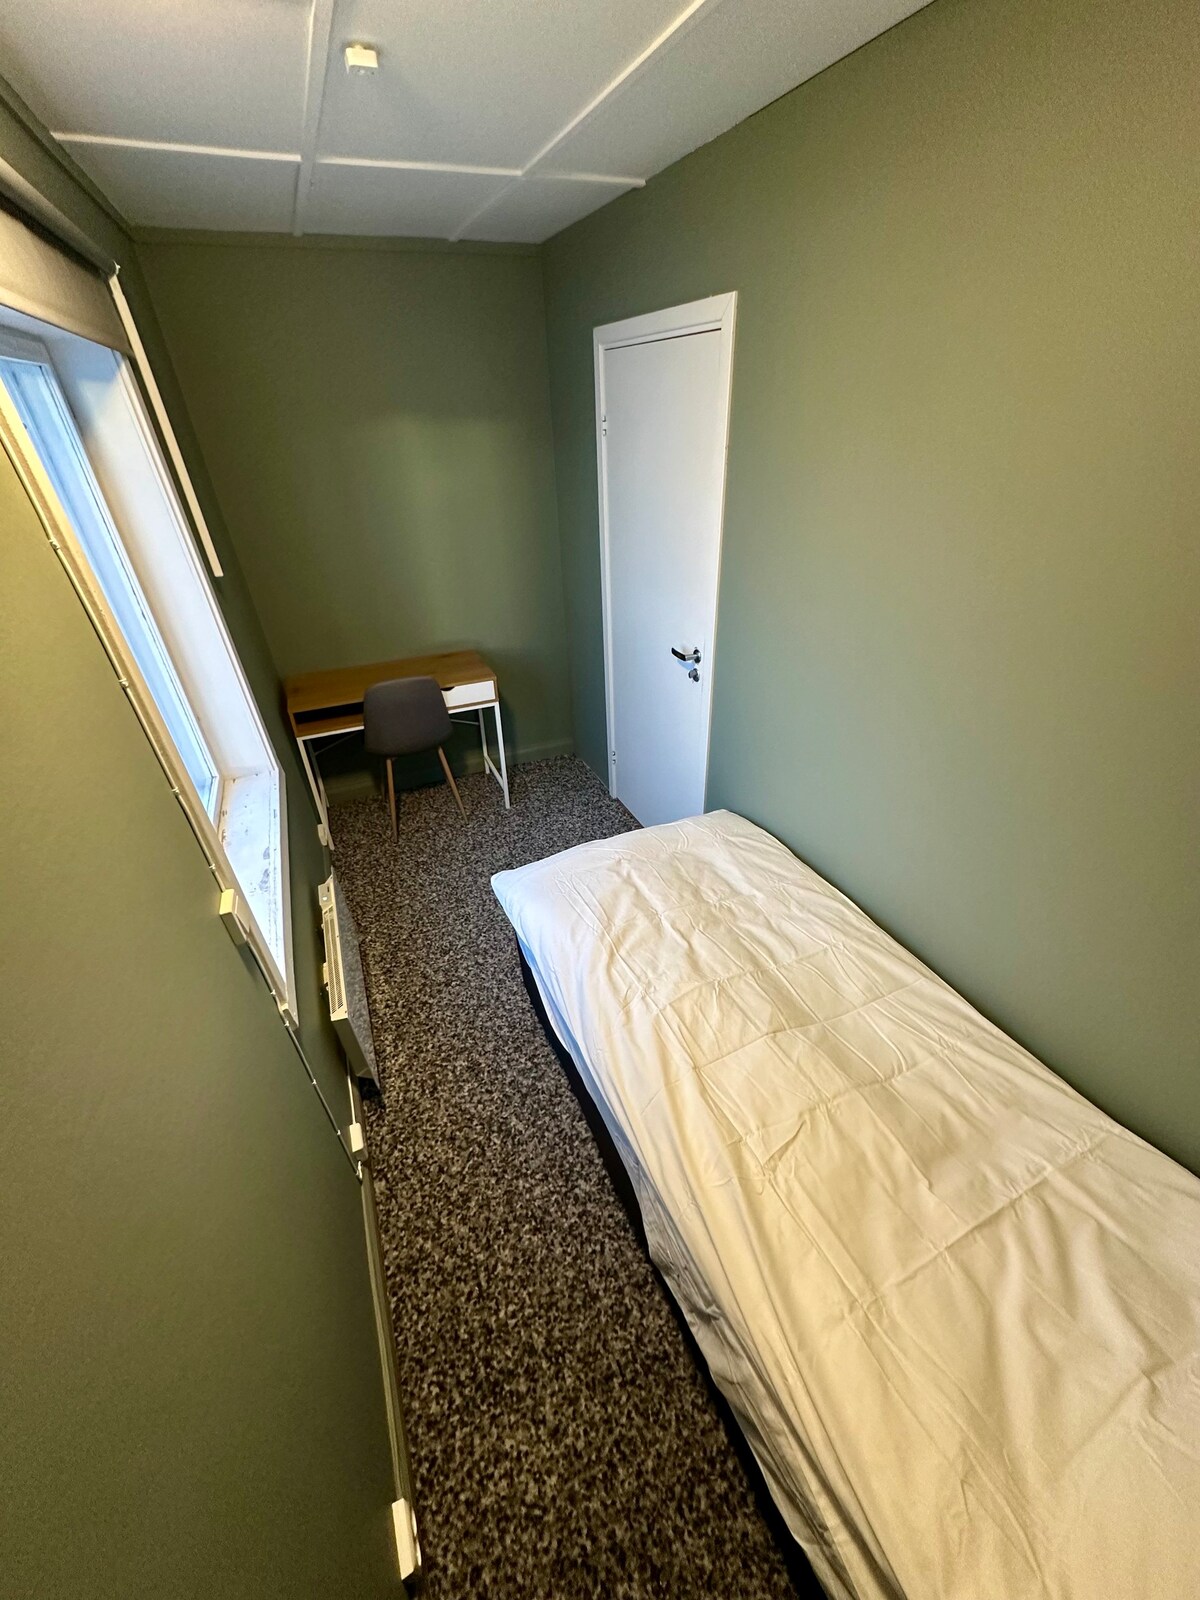 4 Bedroom Private Apartment - 10 min to Oslo & OSL